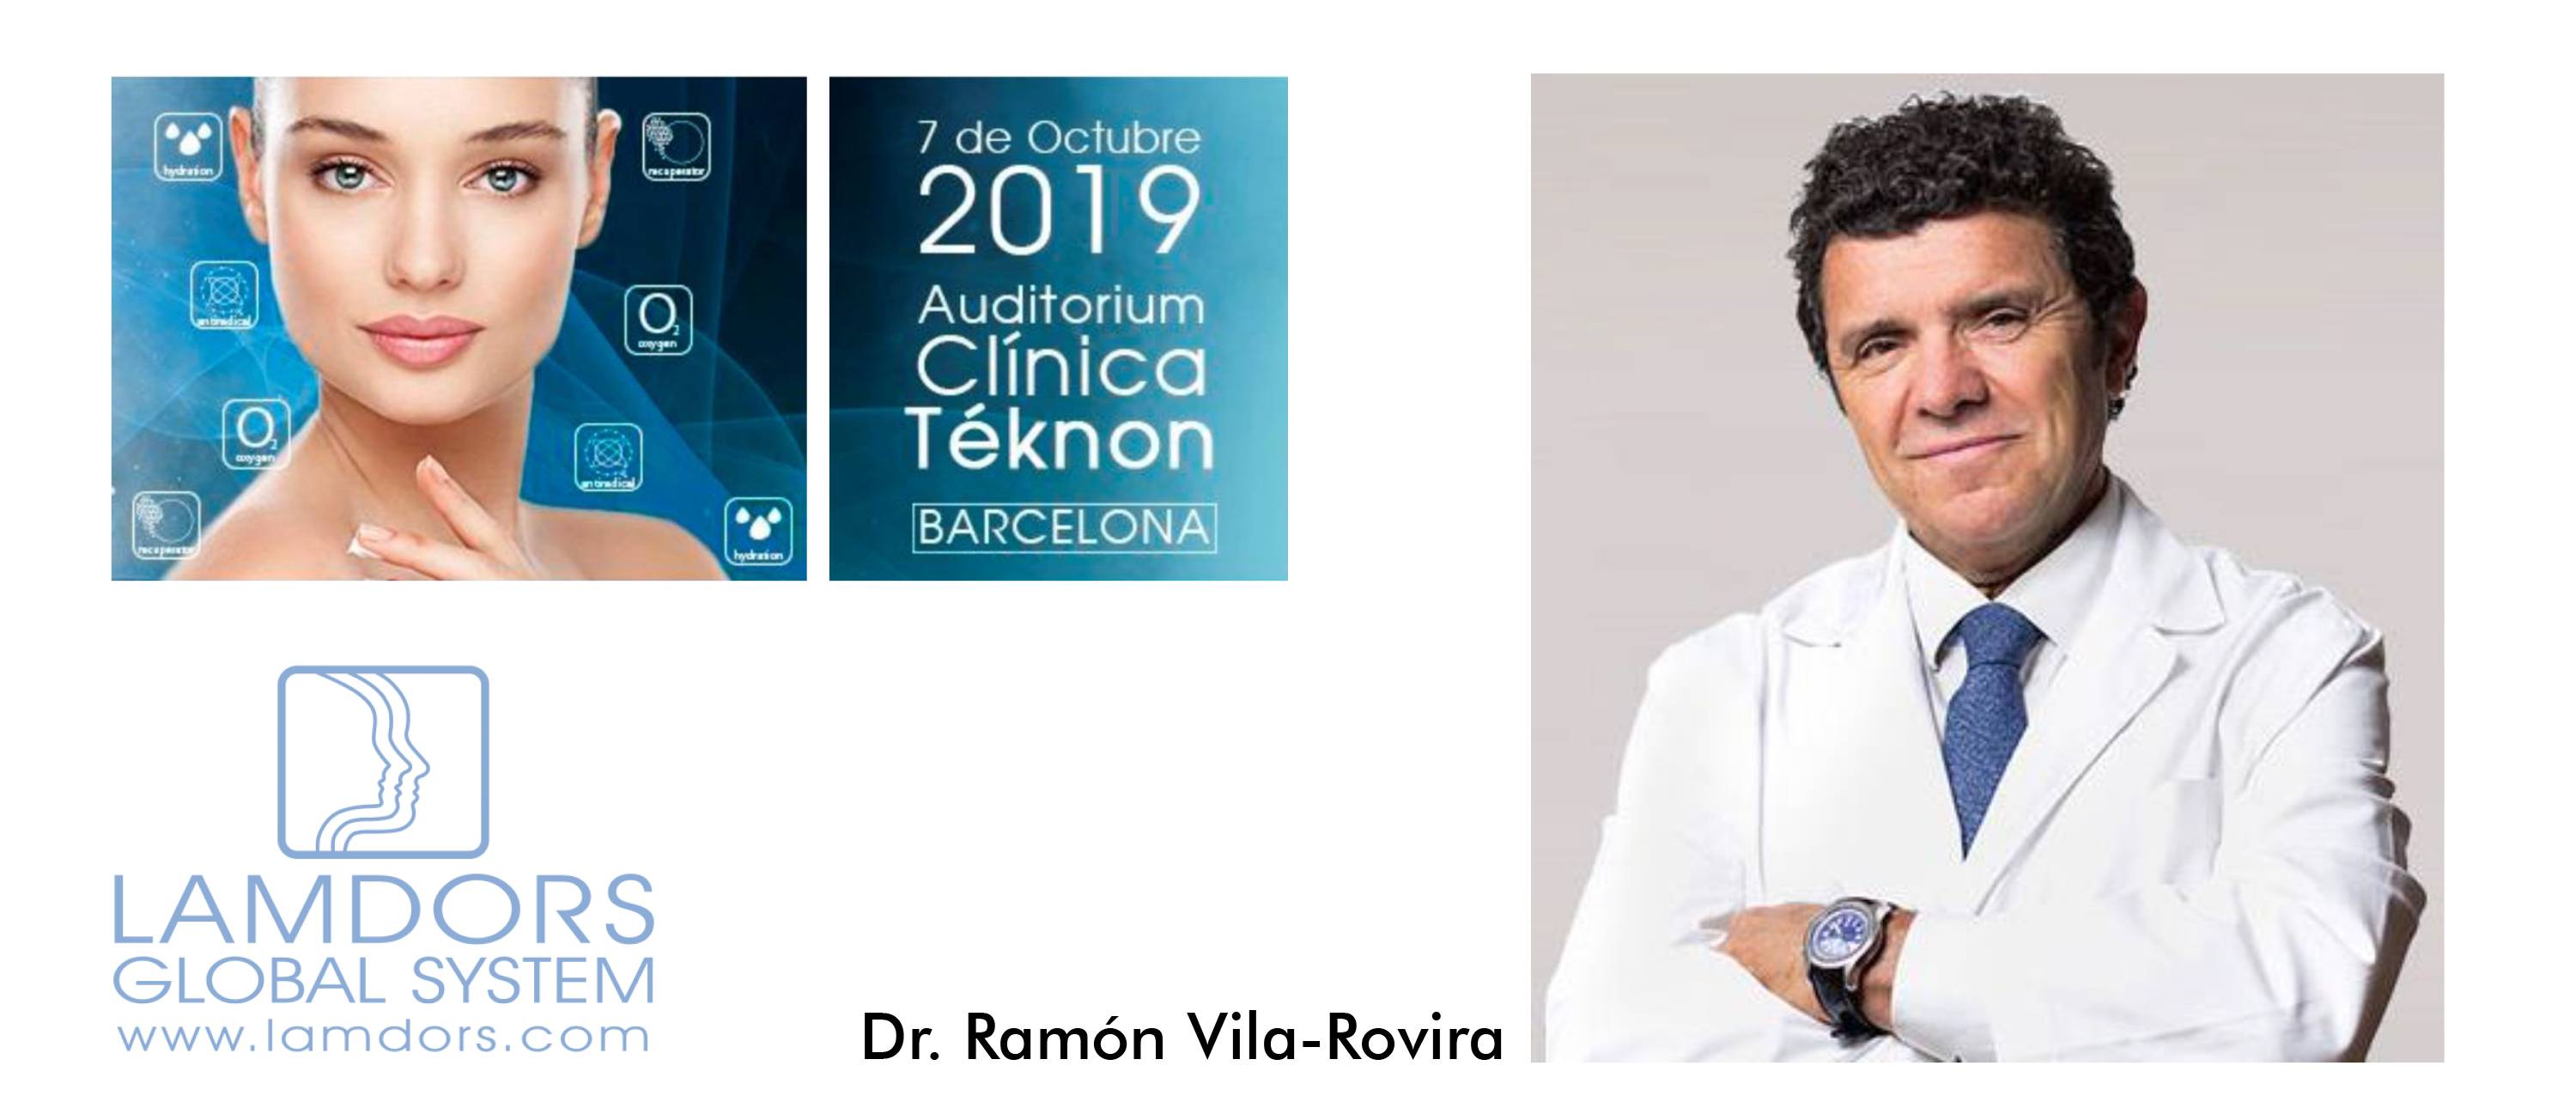 SIMPOSIO LAMDORS 2019. PONENCIA DR. RAMÓN VILA-ROVIRA.